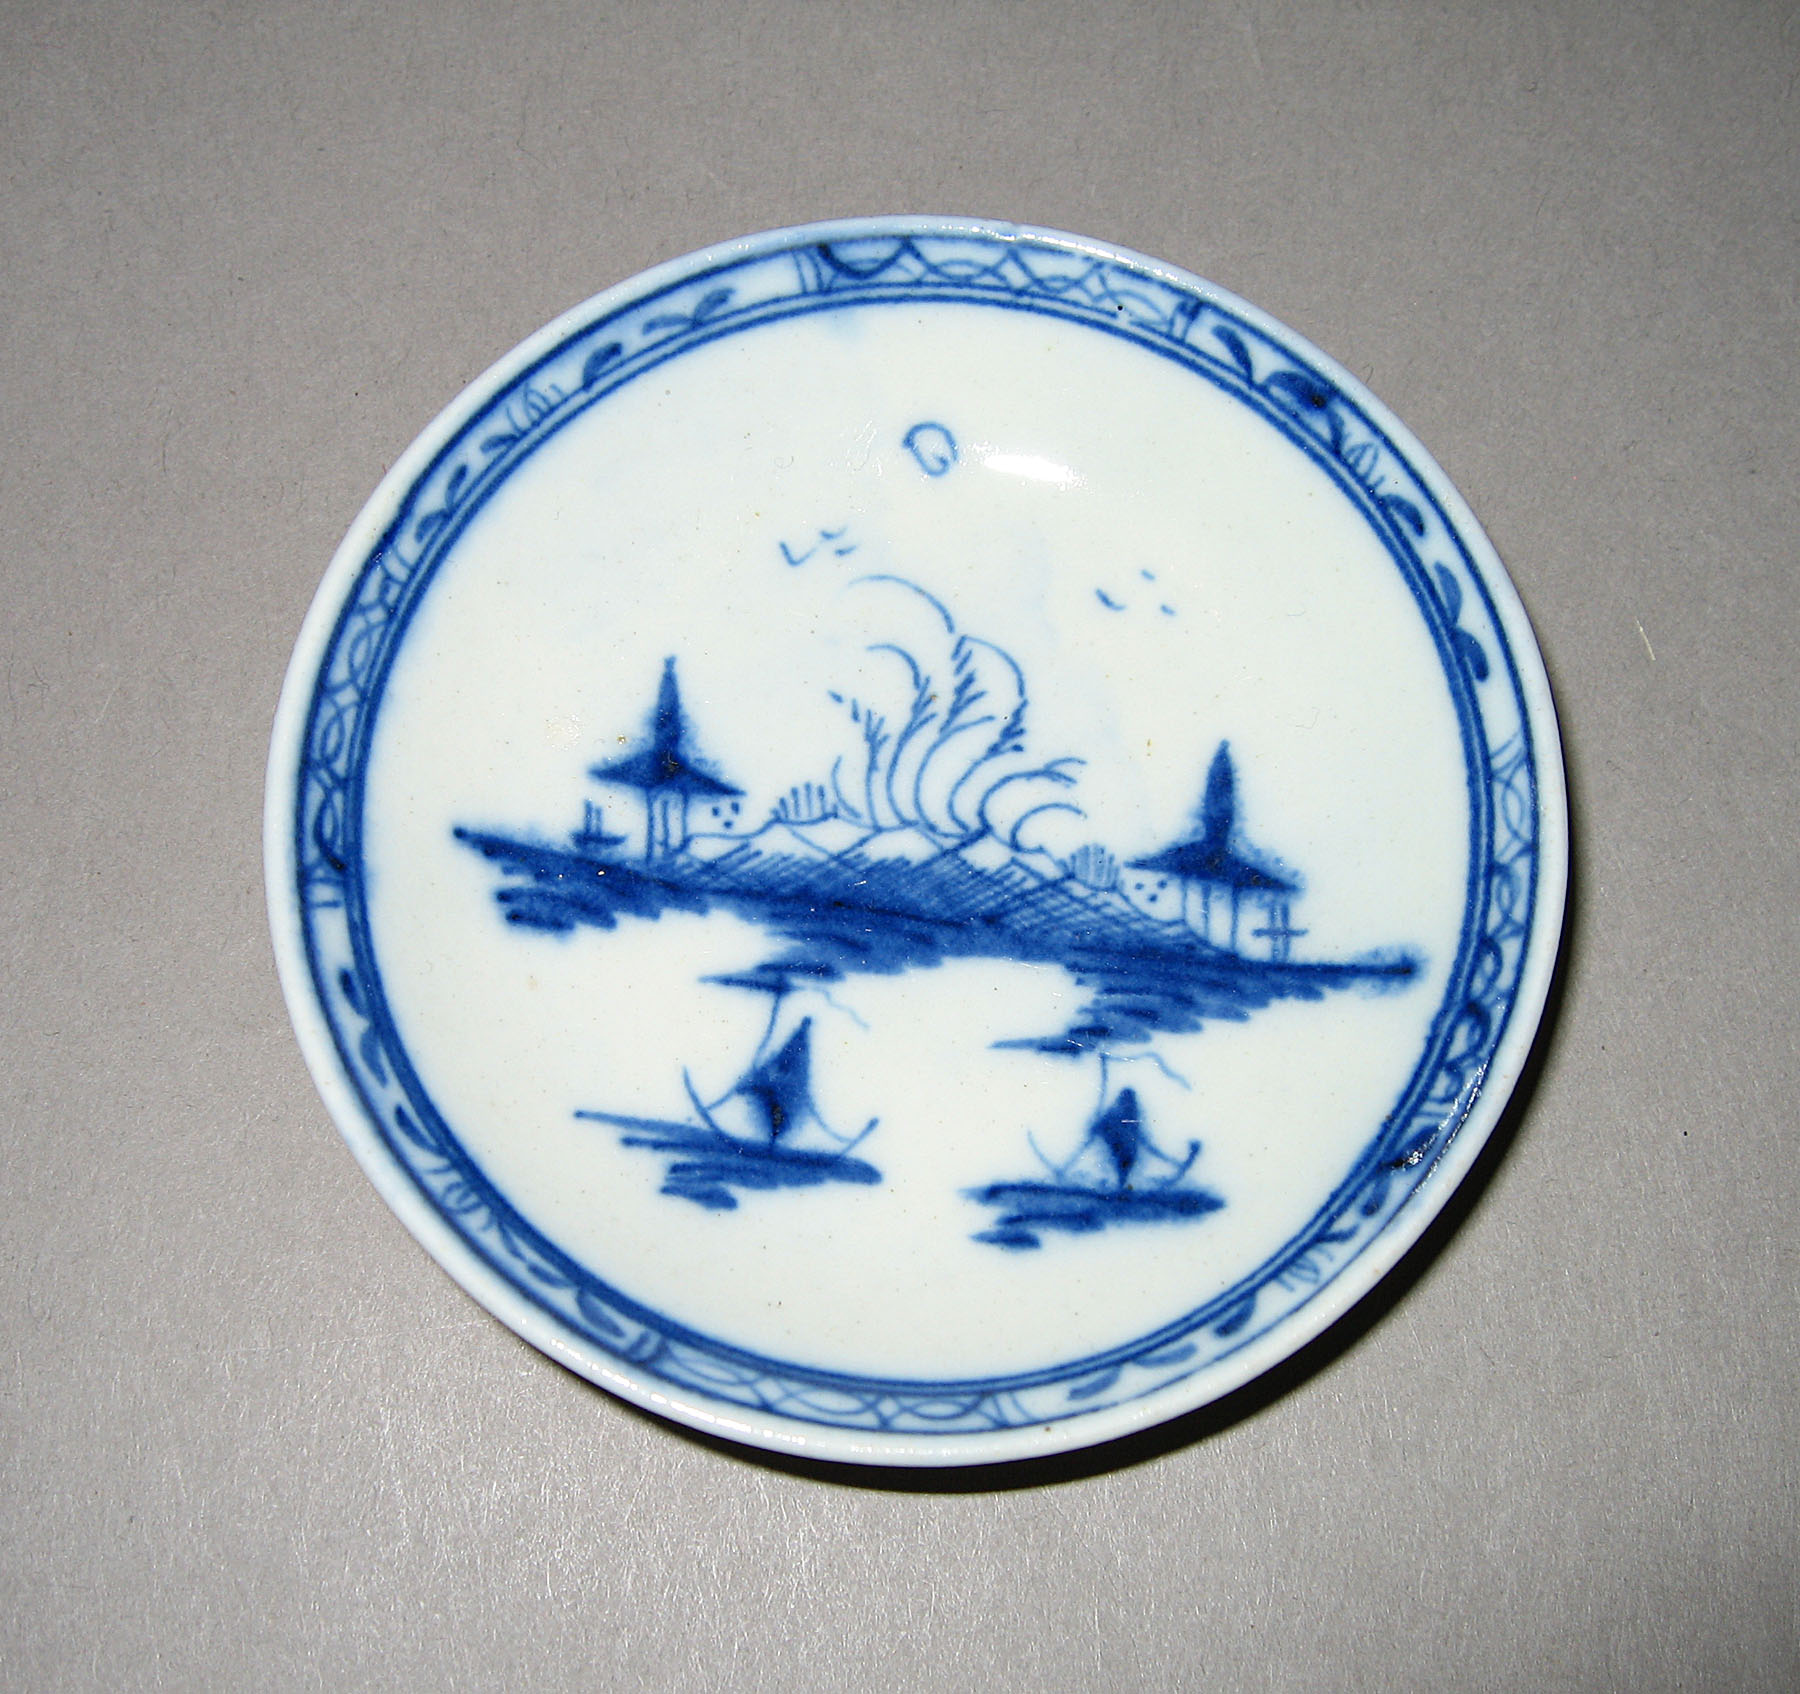 1965.0561.006 Miniature saucer